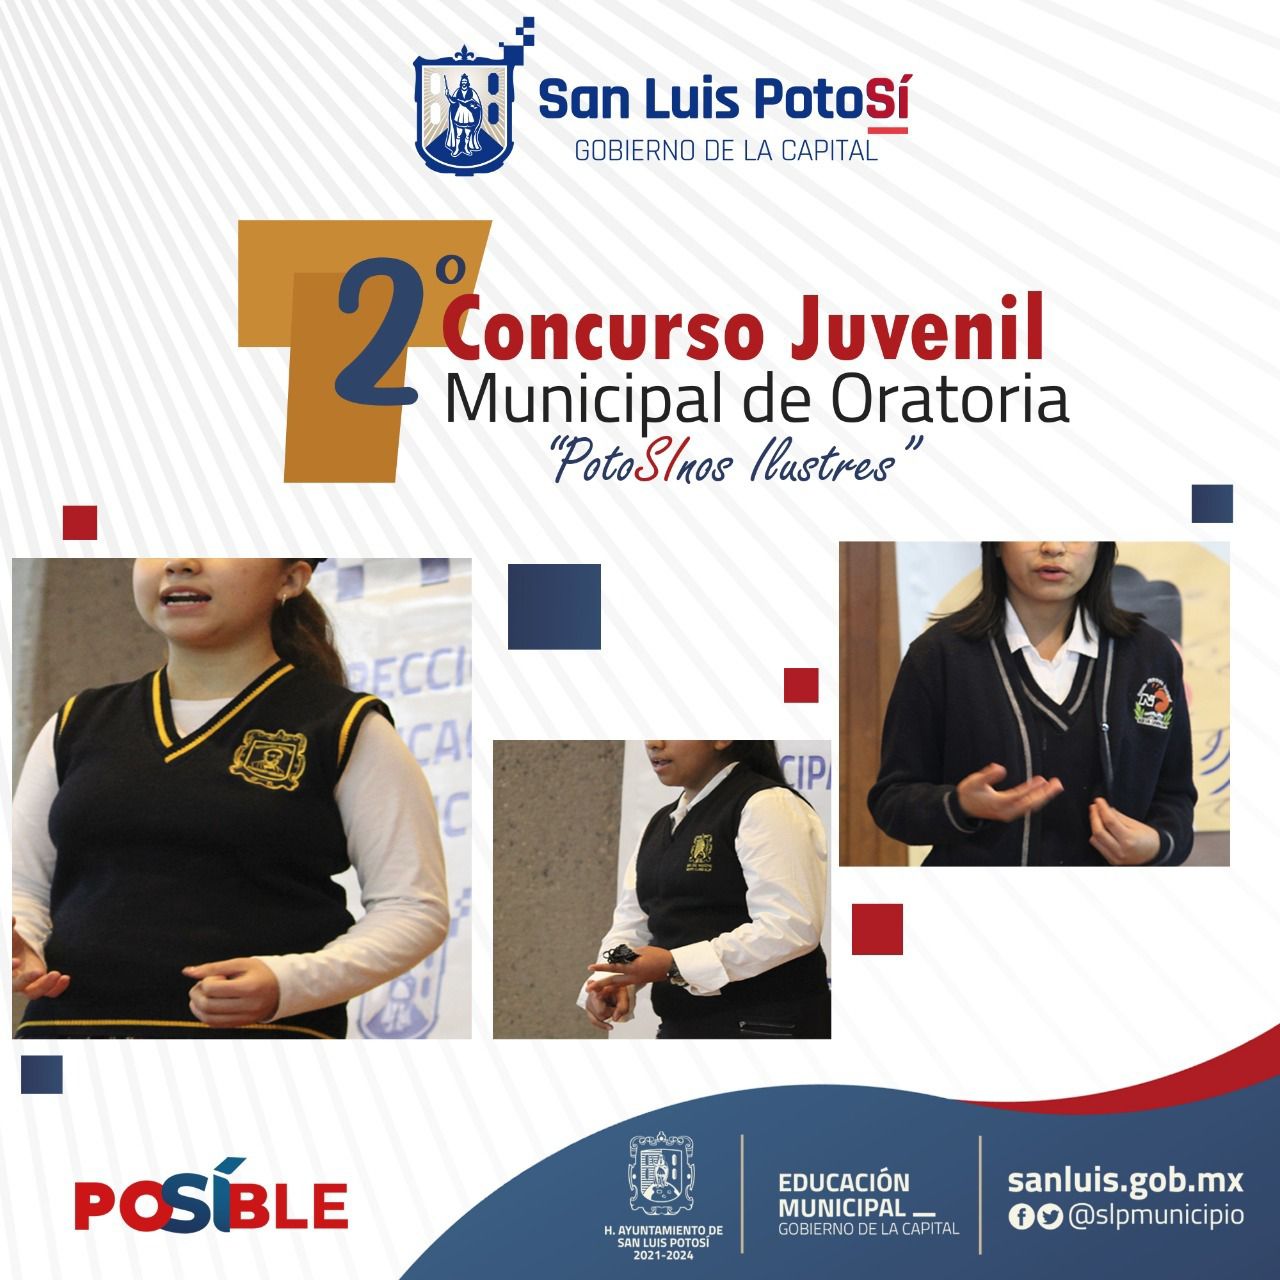  Ayuntamiento de SLP invita al 2do Concurso Juvenil Municipal de Oratoria “Potosinos Ilustres”